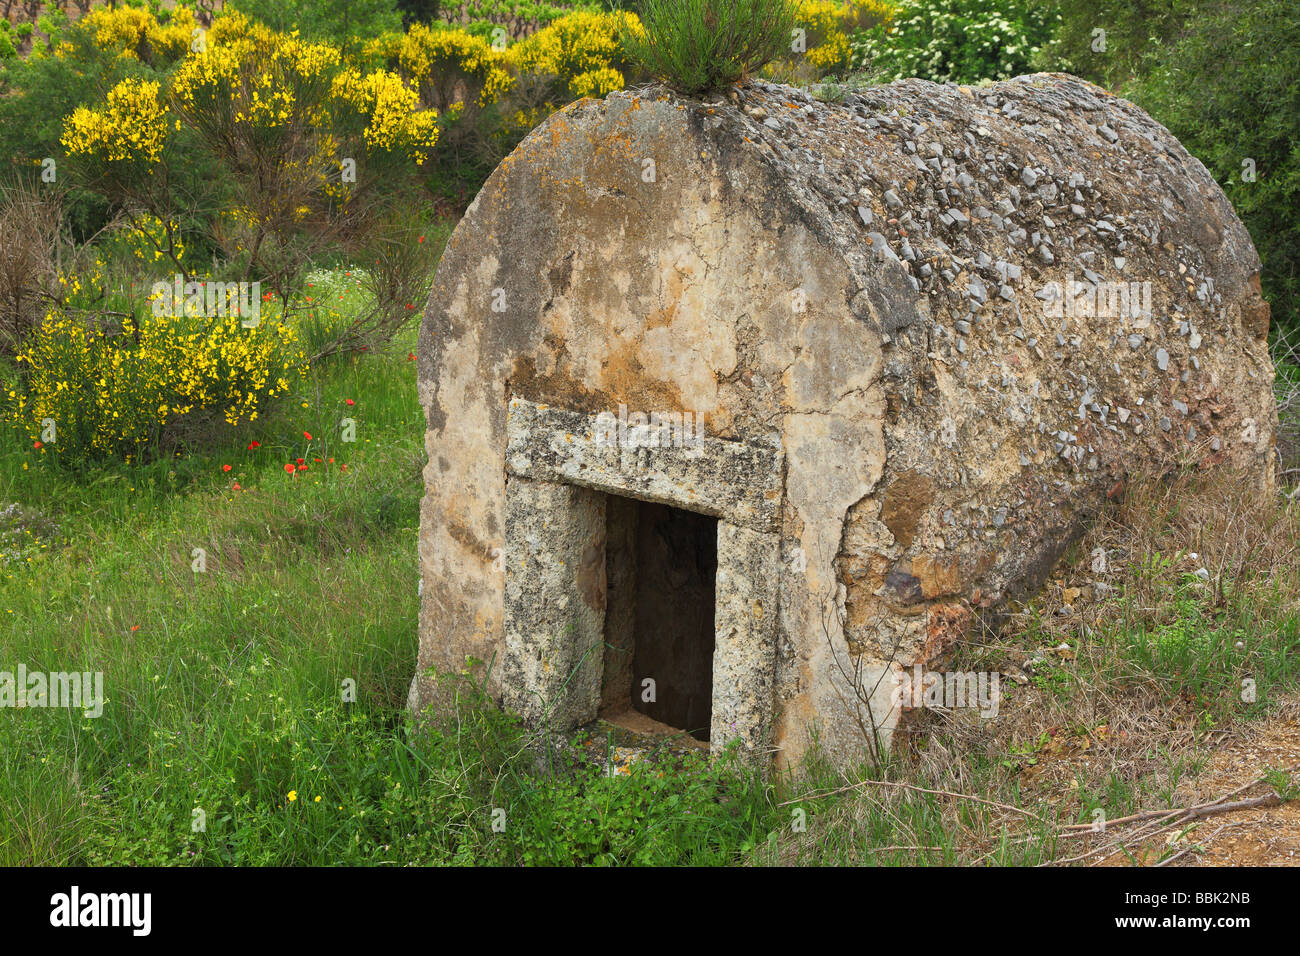 Vieille cabane en pierre dans une prairie au printemps Minervois Languedoc-Rousillon France balai en fleurs coquelicots en fleurs Banque D'Images